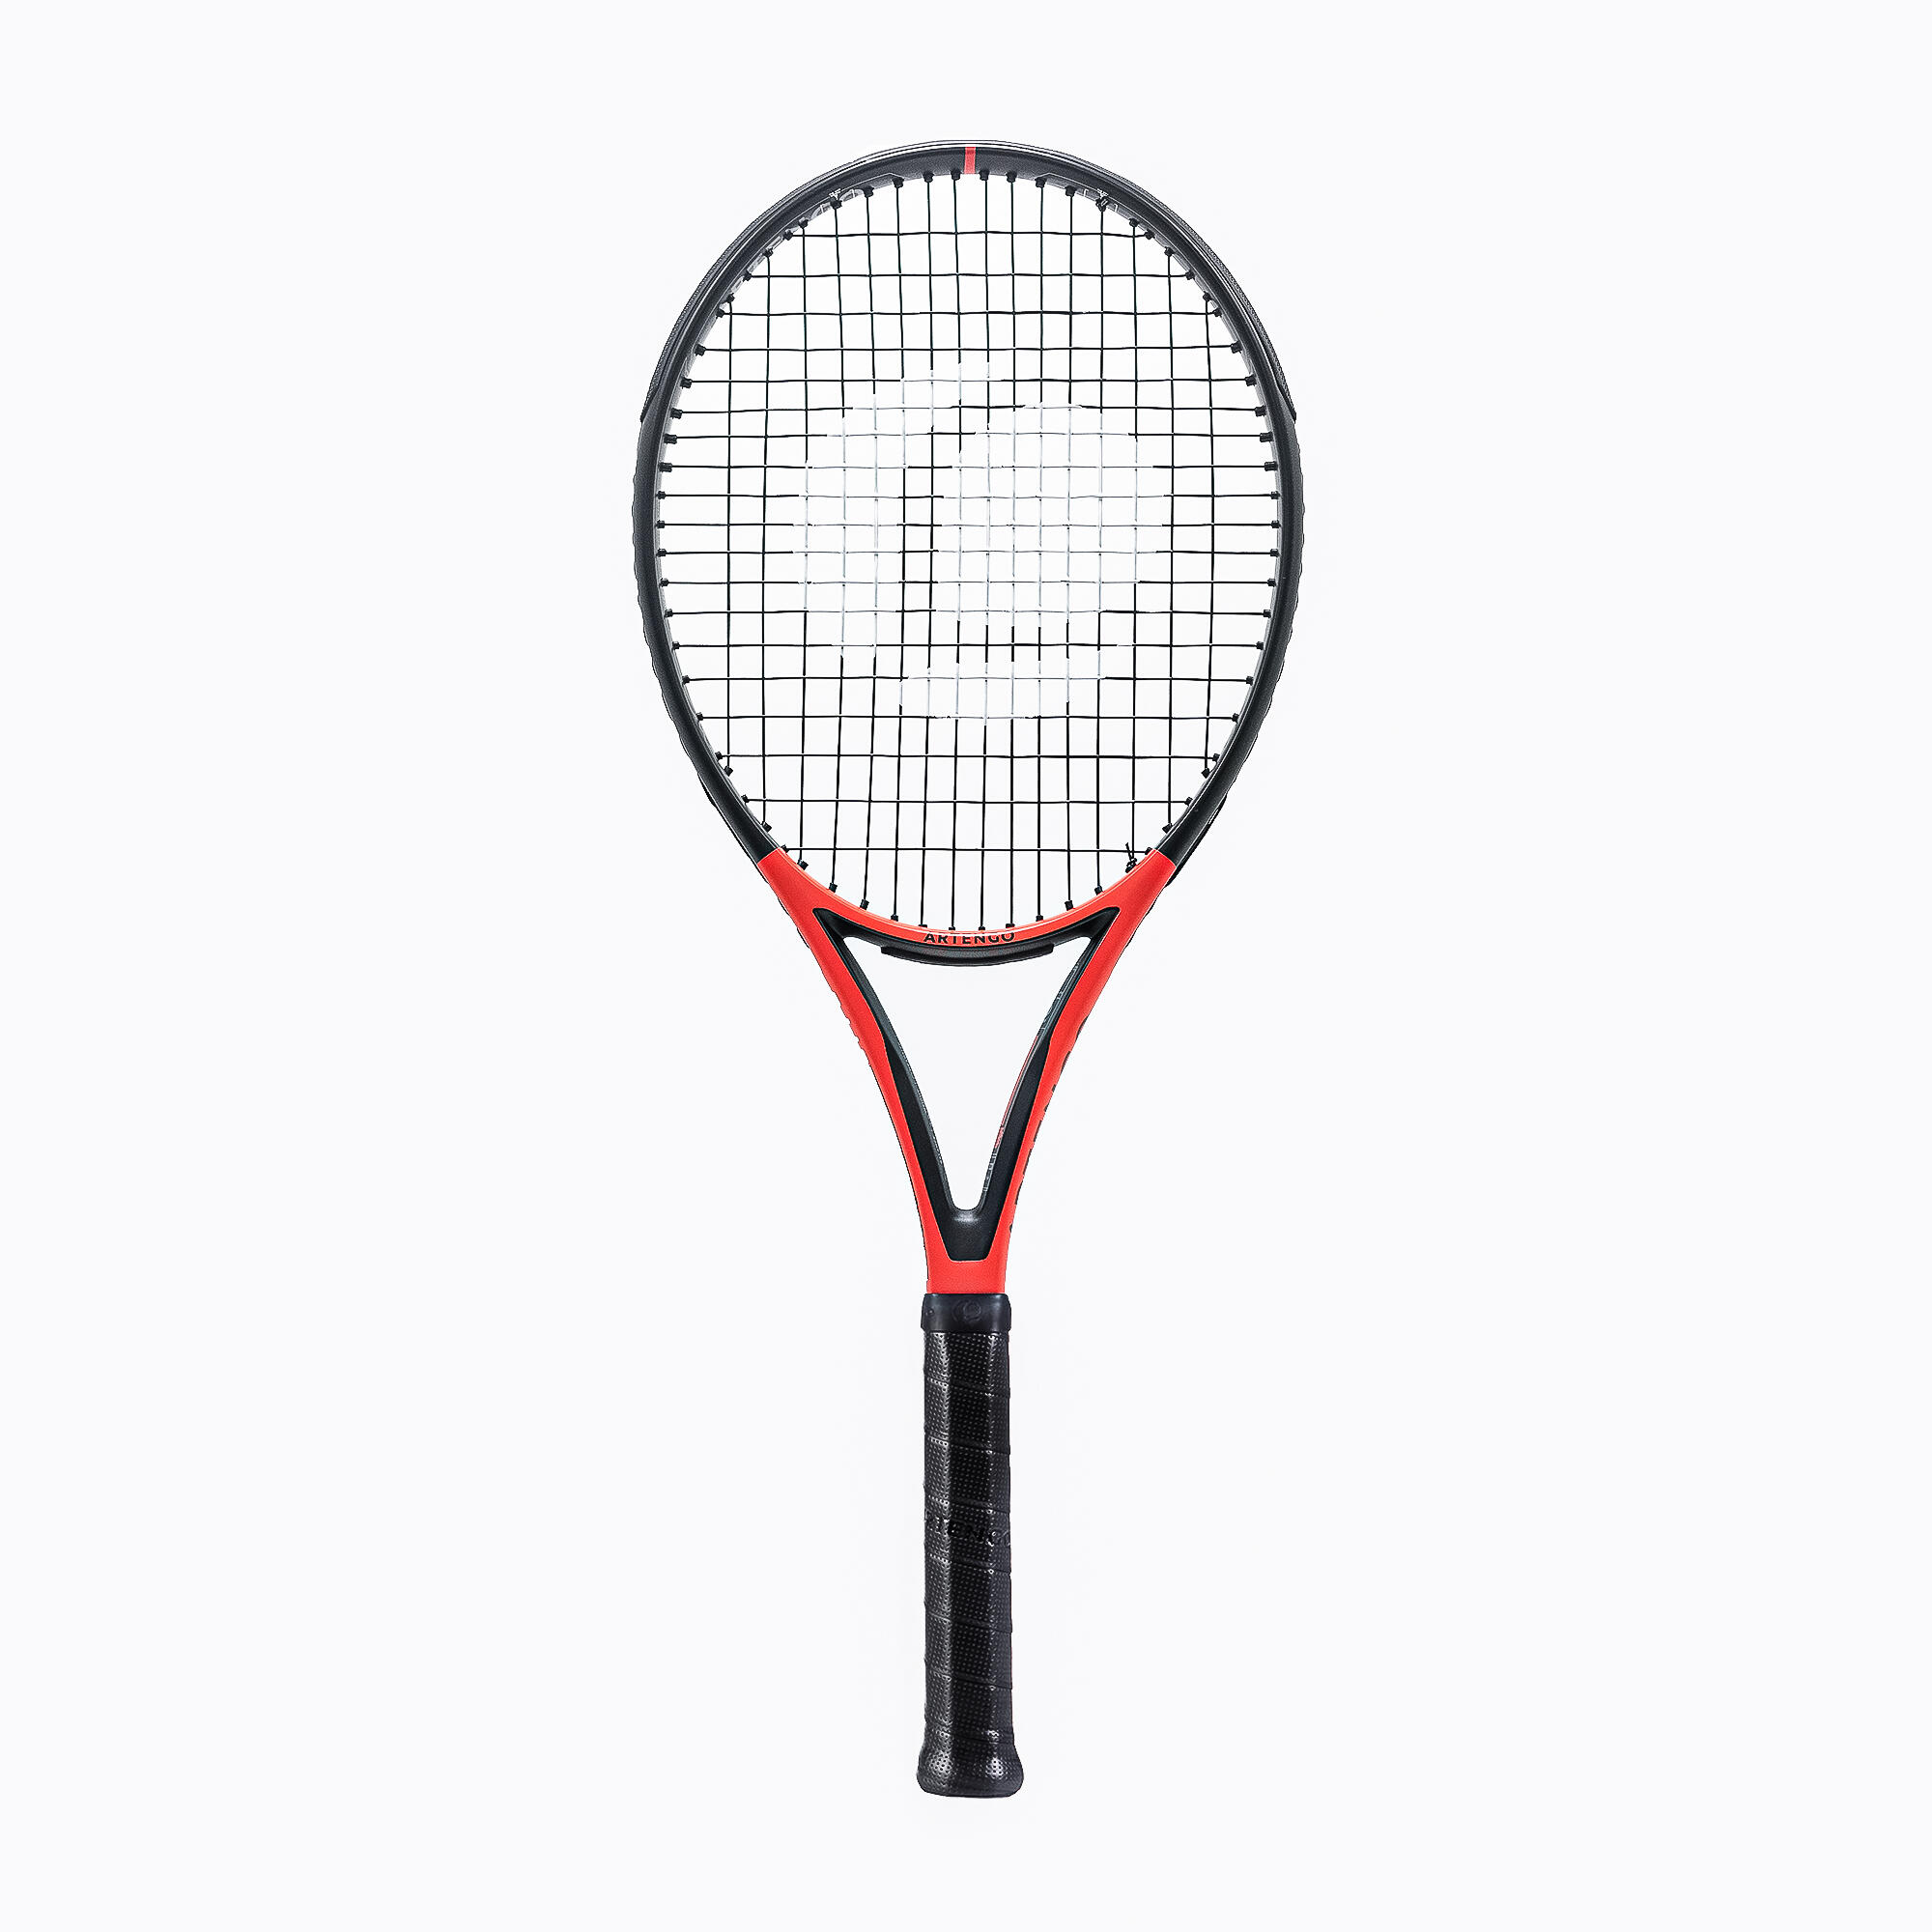 Rachetă Tenis TR990 Power Pro+ 300g Roșu-Negru Adulți ARTENGO ARTENGO